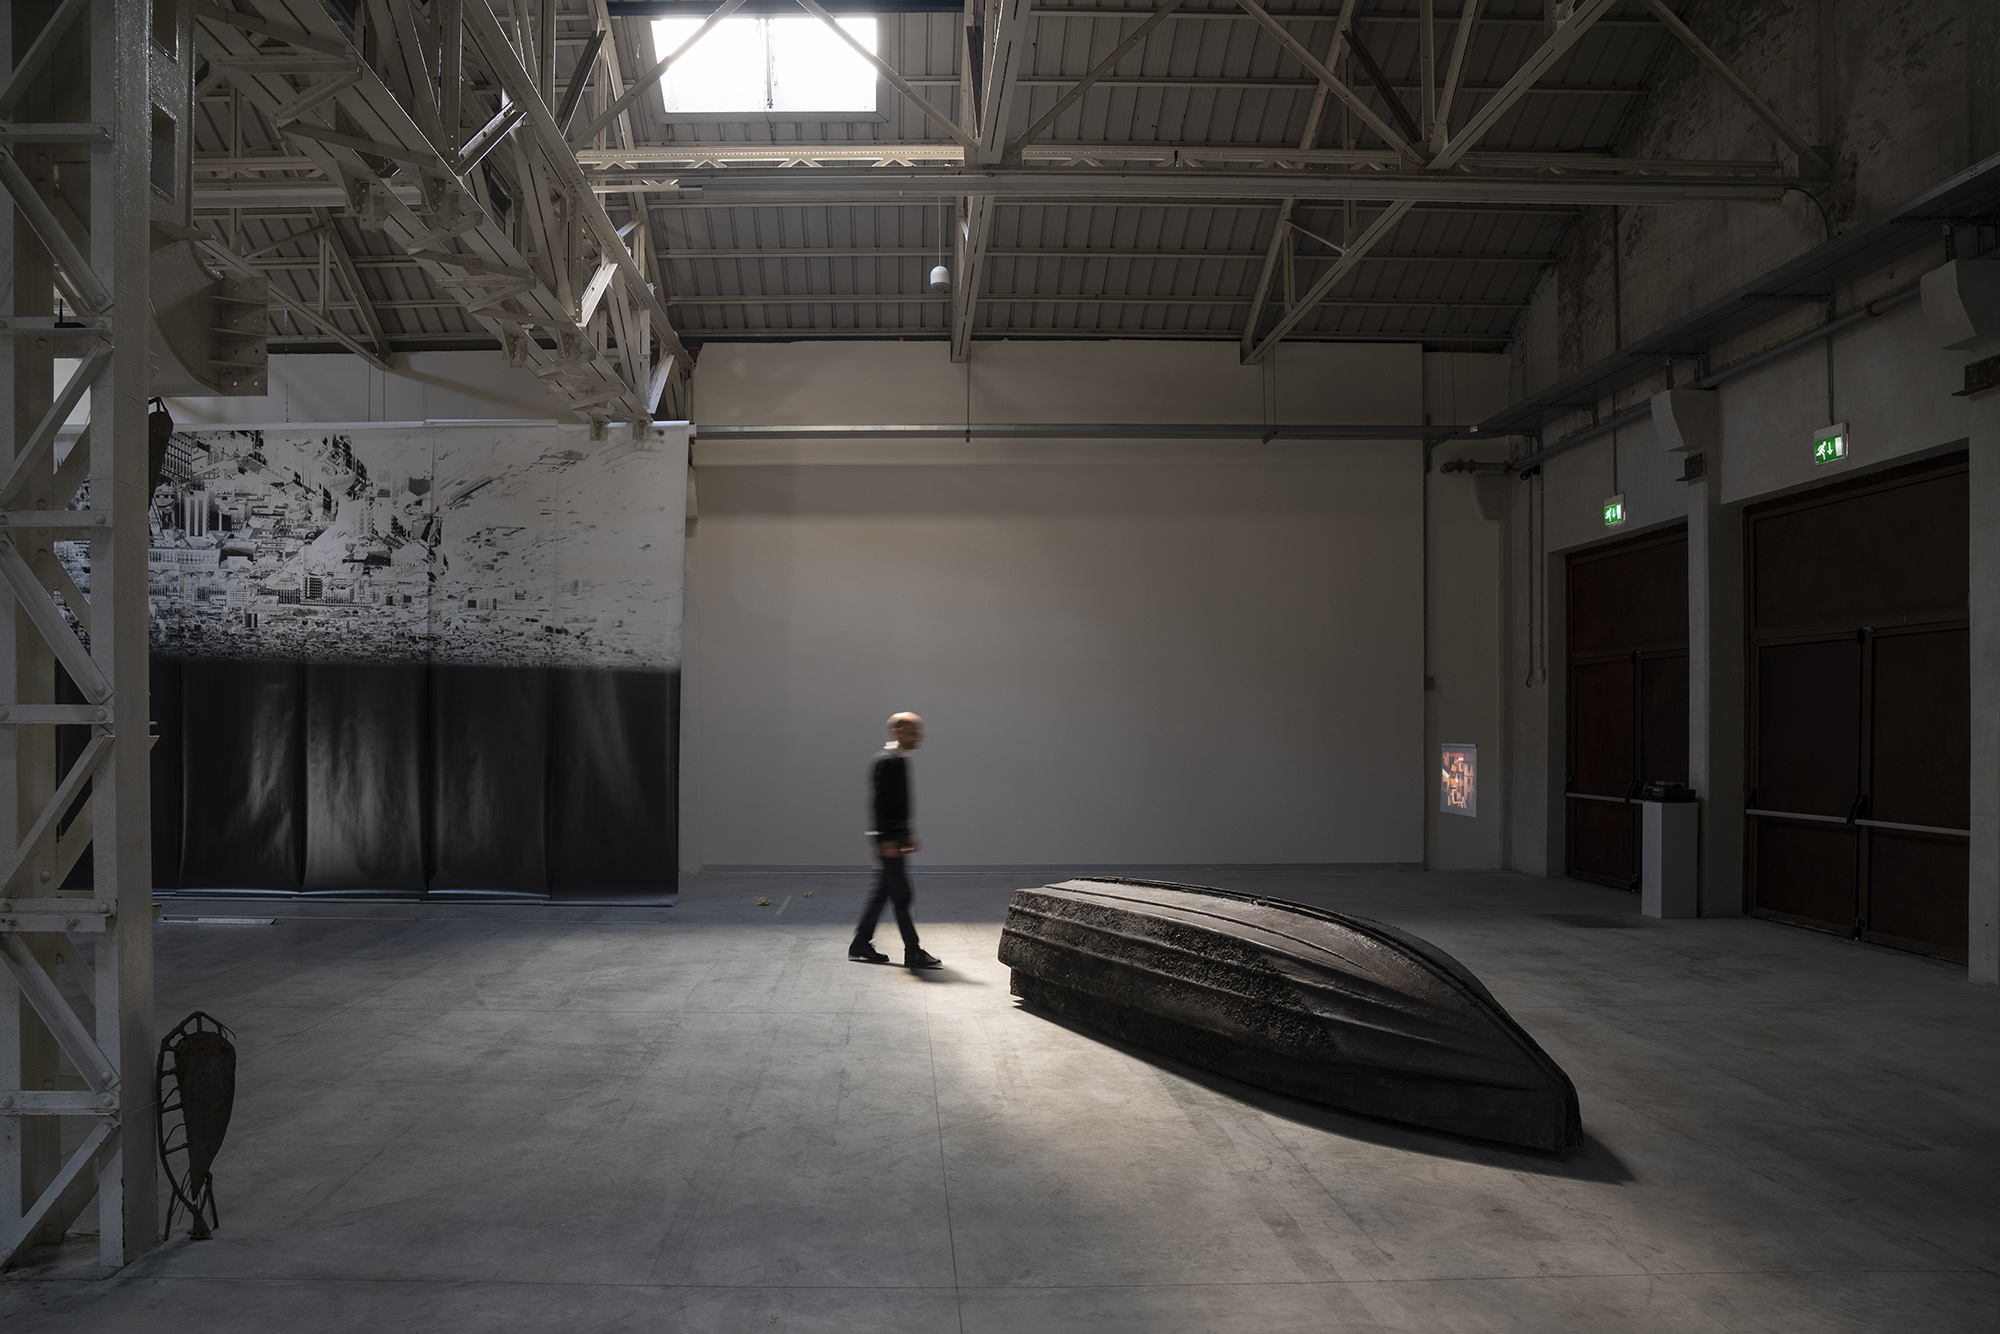 Giorgio Andreotta Calò. Installation view at Pirelli Hangar Bicocca, Milano 2019. Courtesy of the artist and Pirelli HangarBicocca